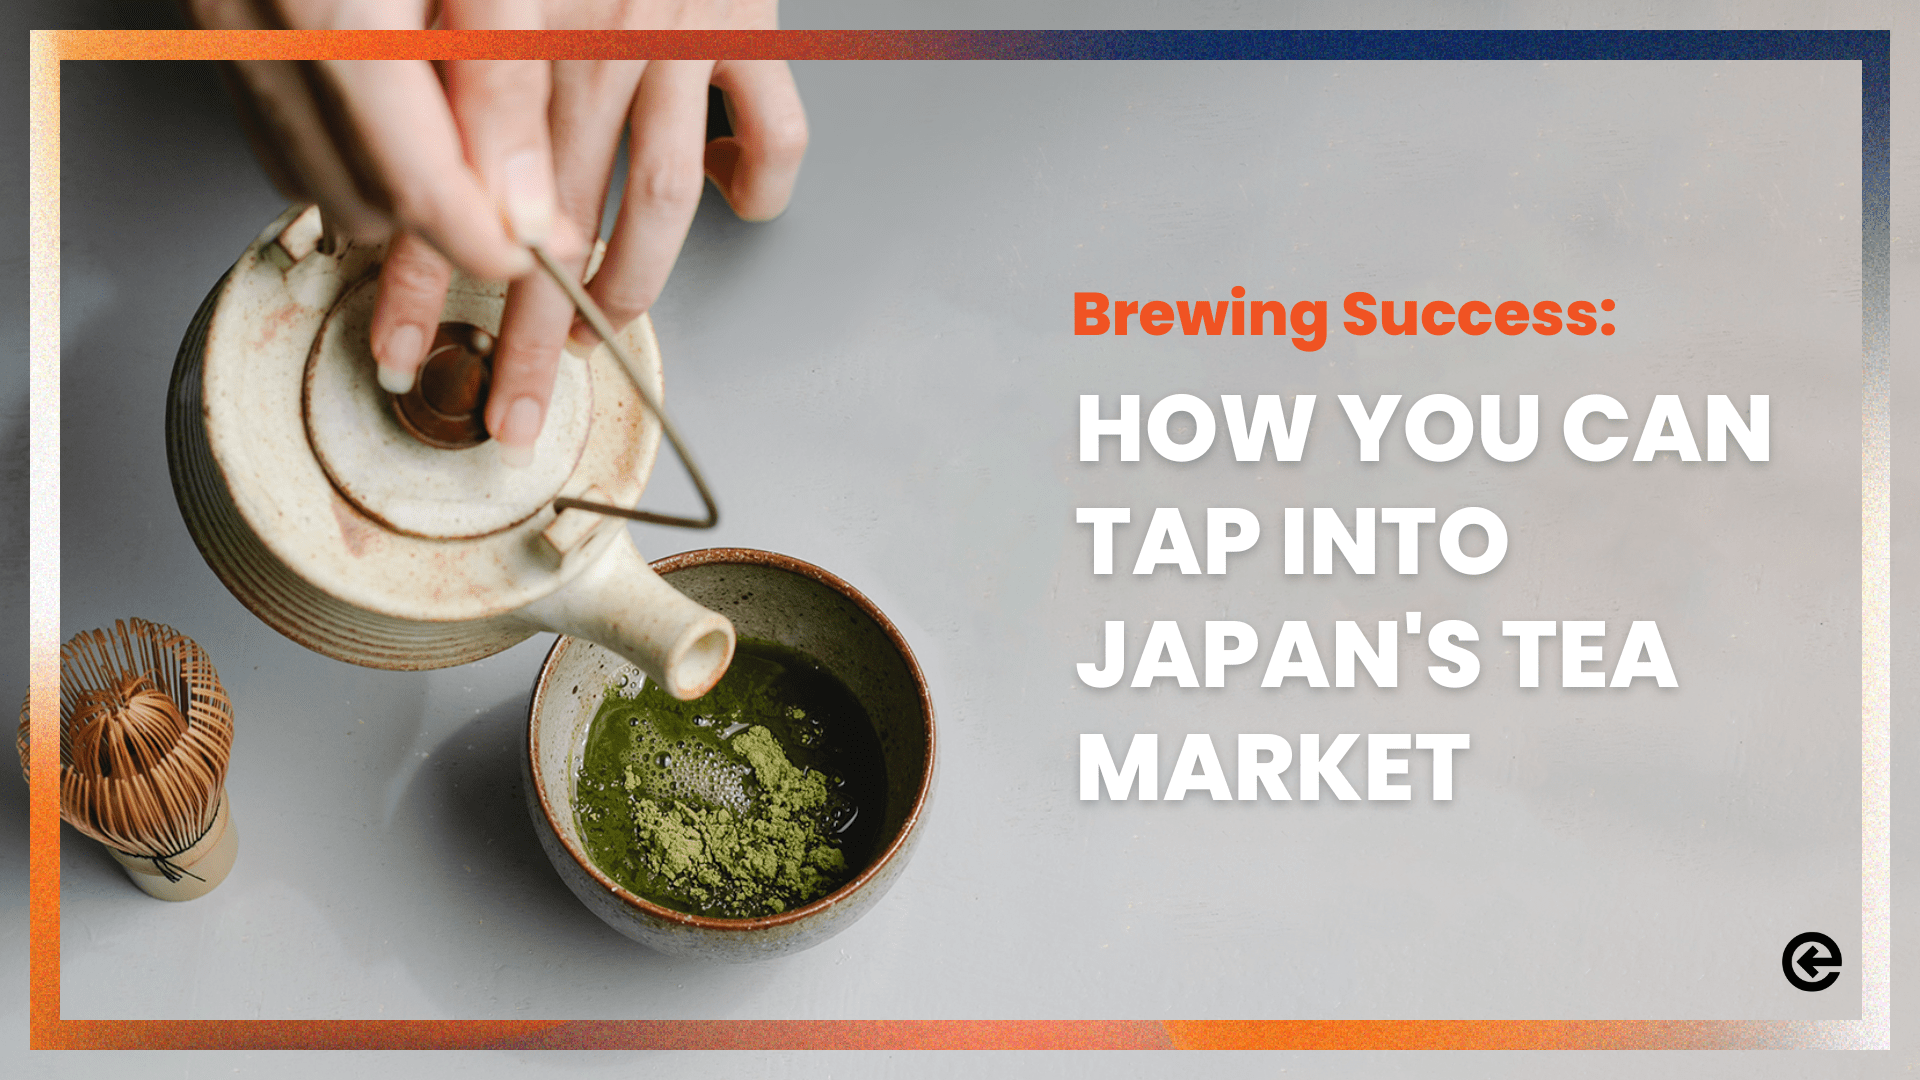 Erfolgreich brauen: Wie Sie den japanischen Teemarkt erschließen können